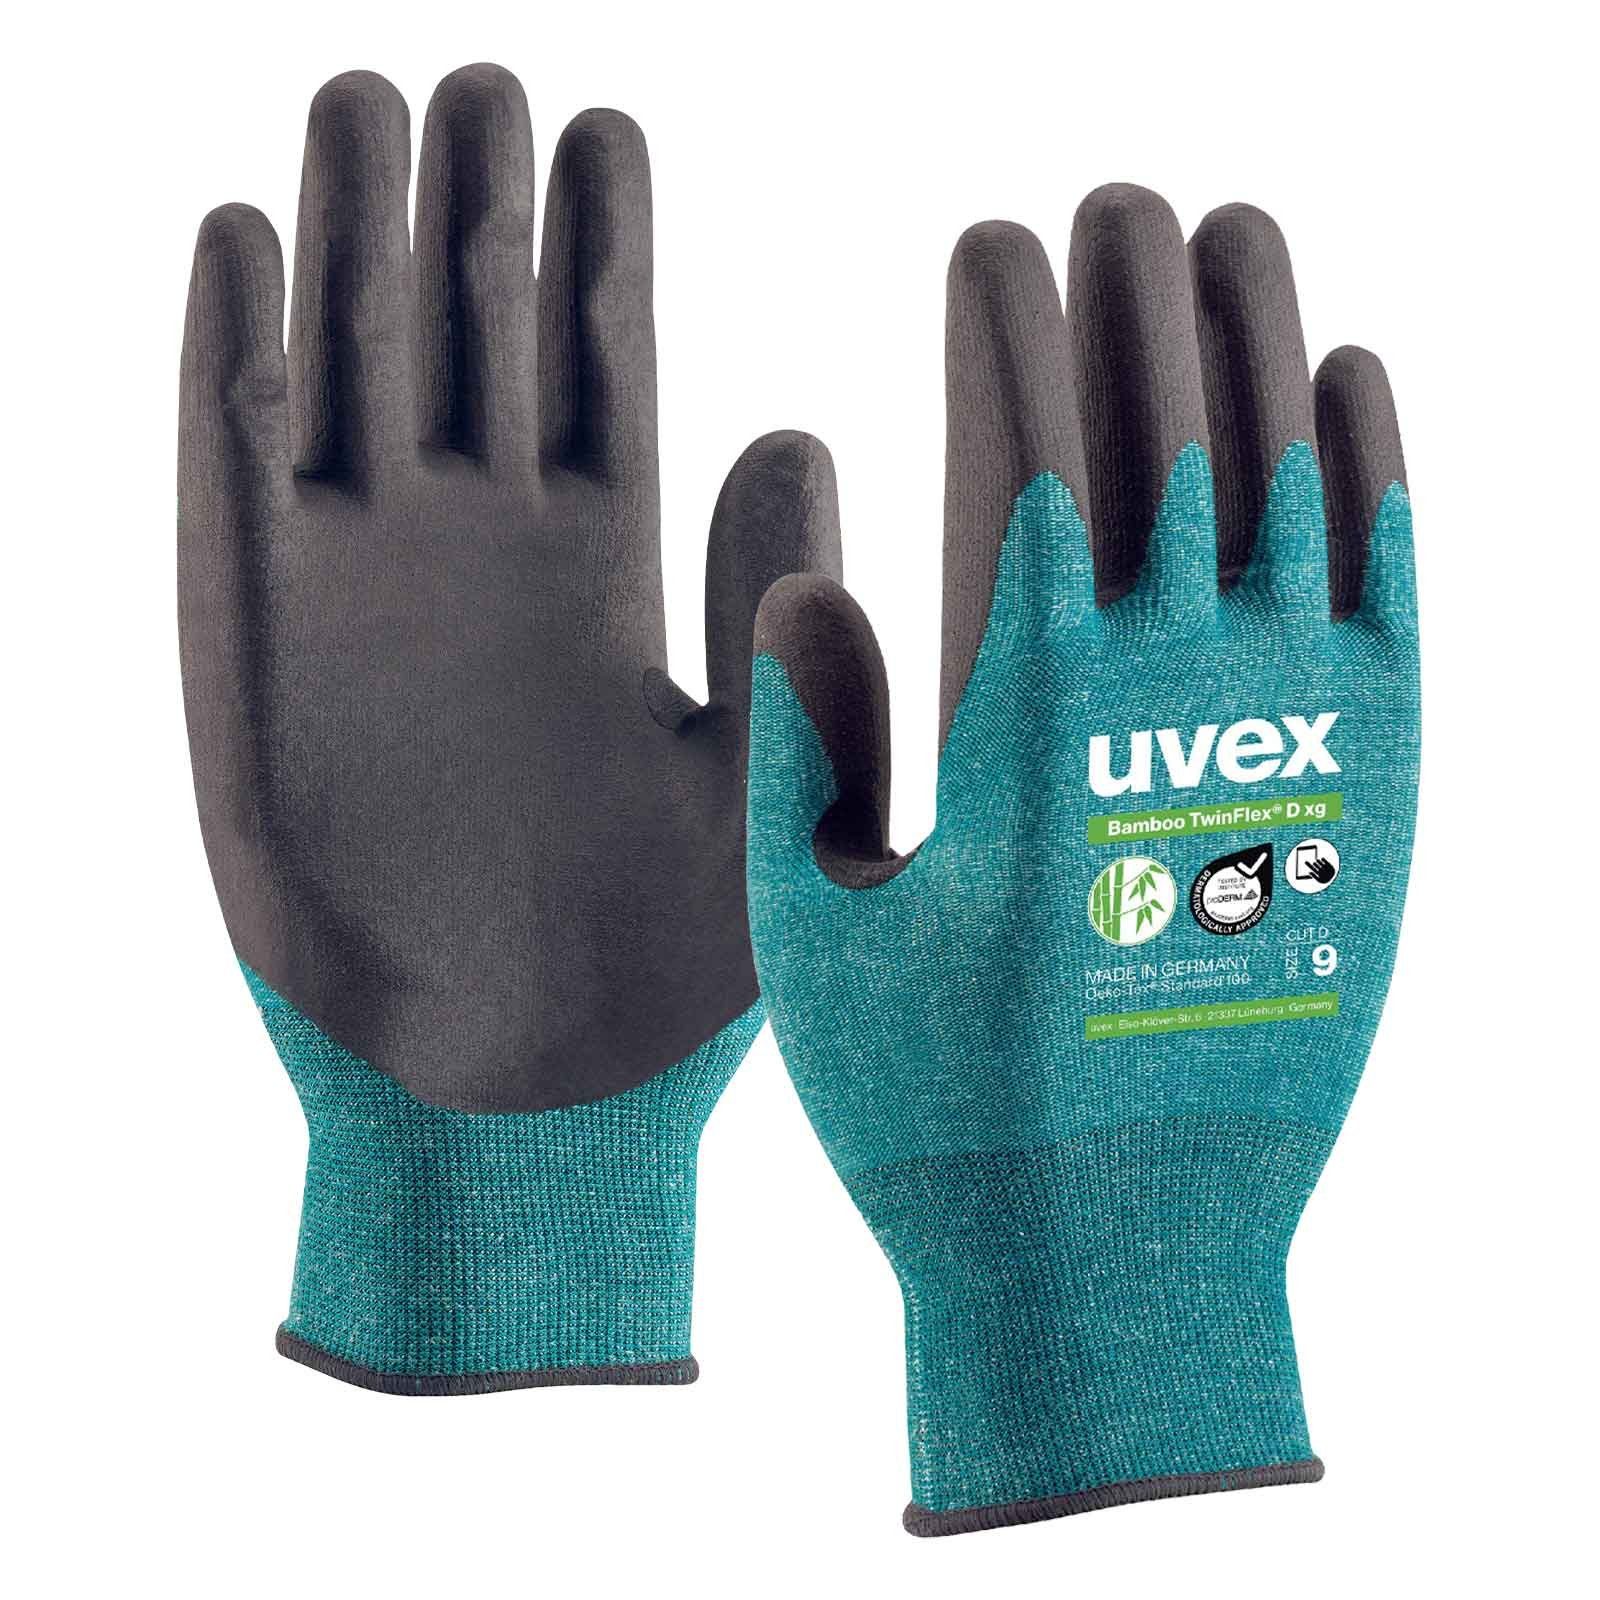 xg Bamboo Schnittschutzhandschuhe Cut D Uvex TwinFlex 5 uvex Mechaniker-Handschuhe (Spar-Set) D Paar 60090